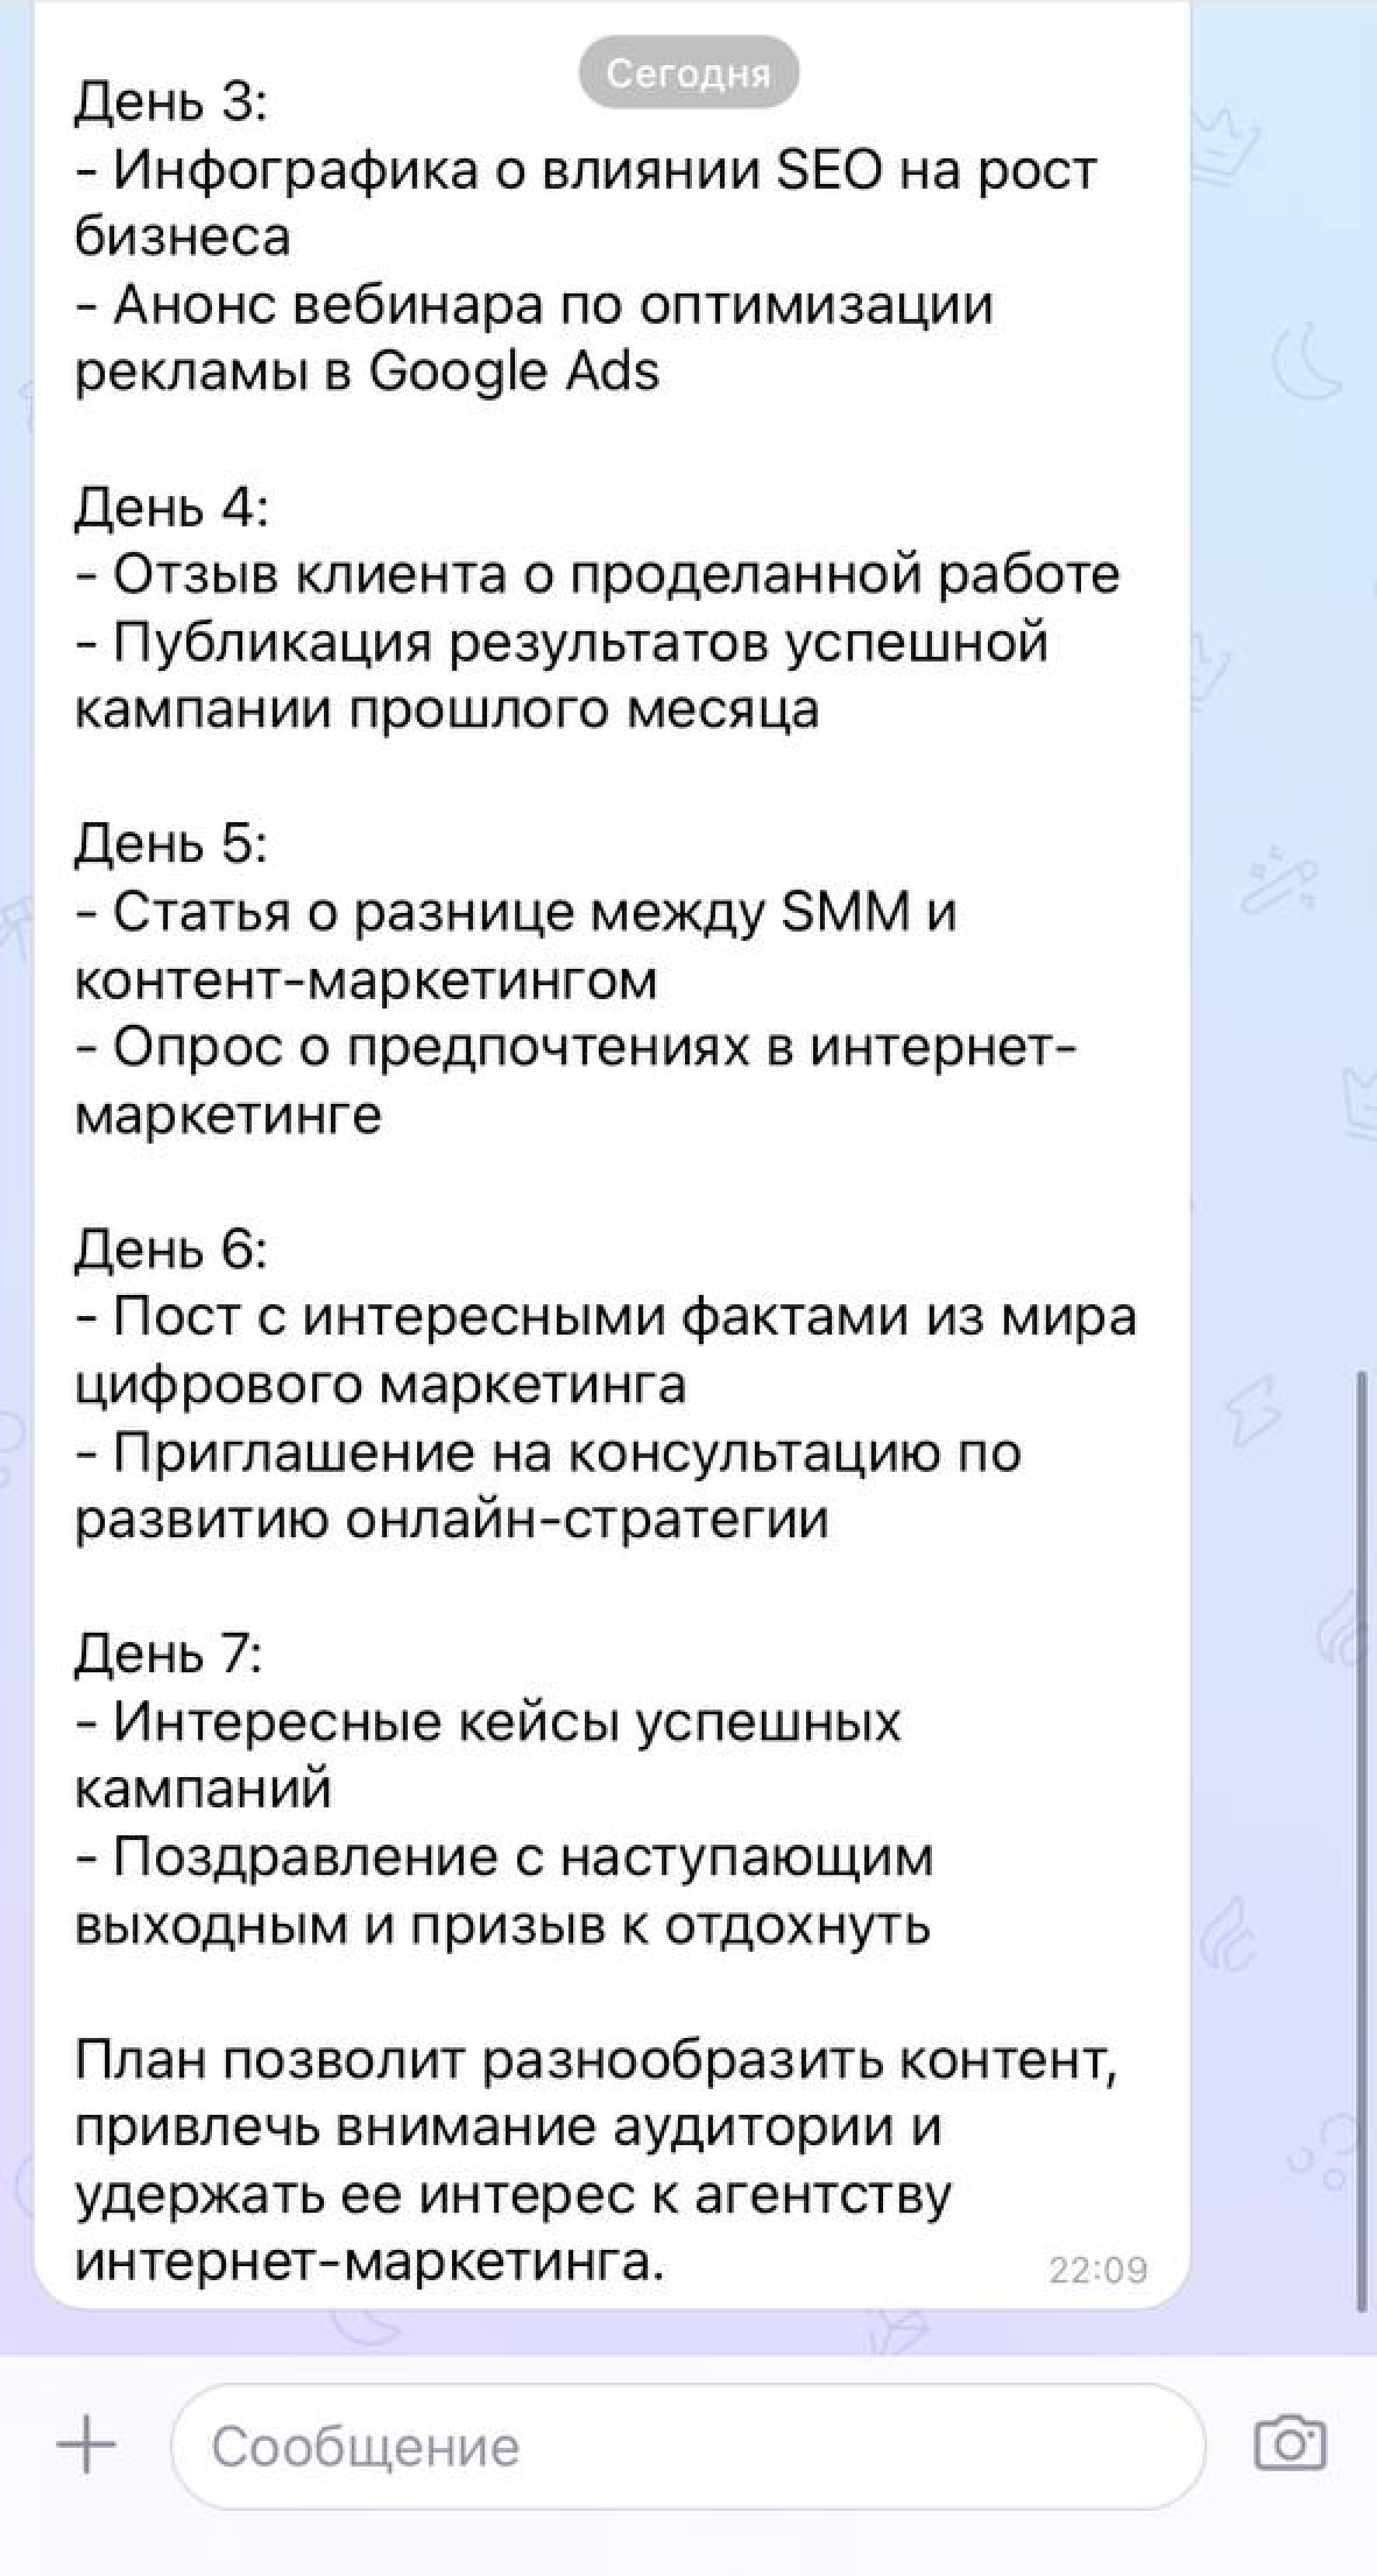 Источник: скриншот диалога с ChatGPT, https://tenchat.ru/chatgpt 